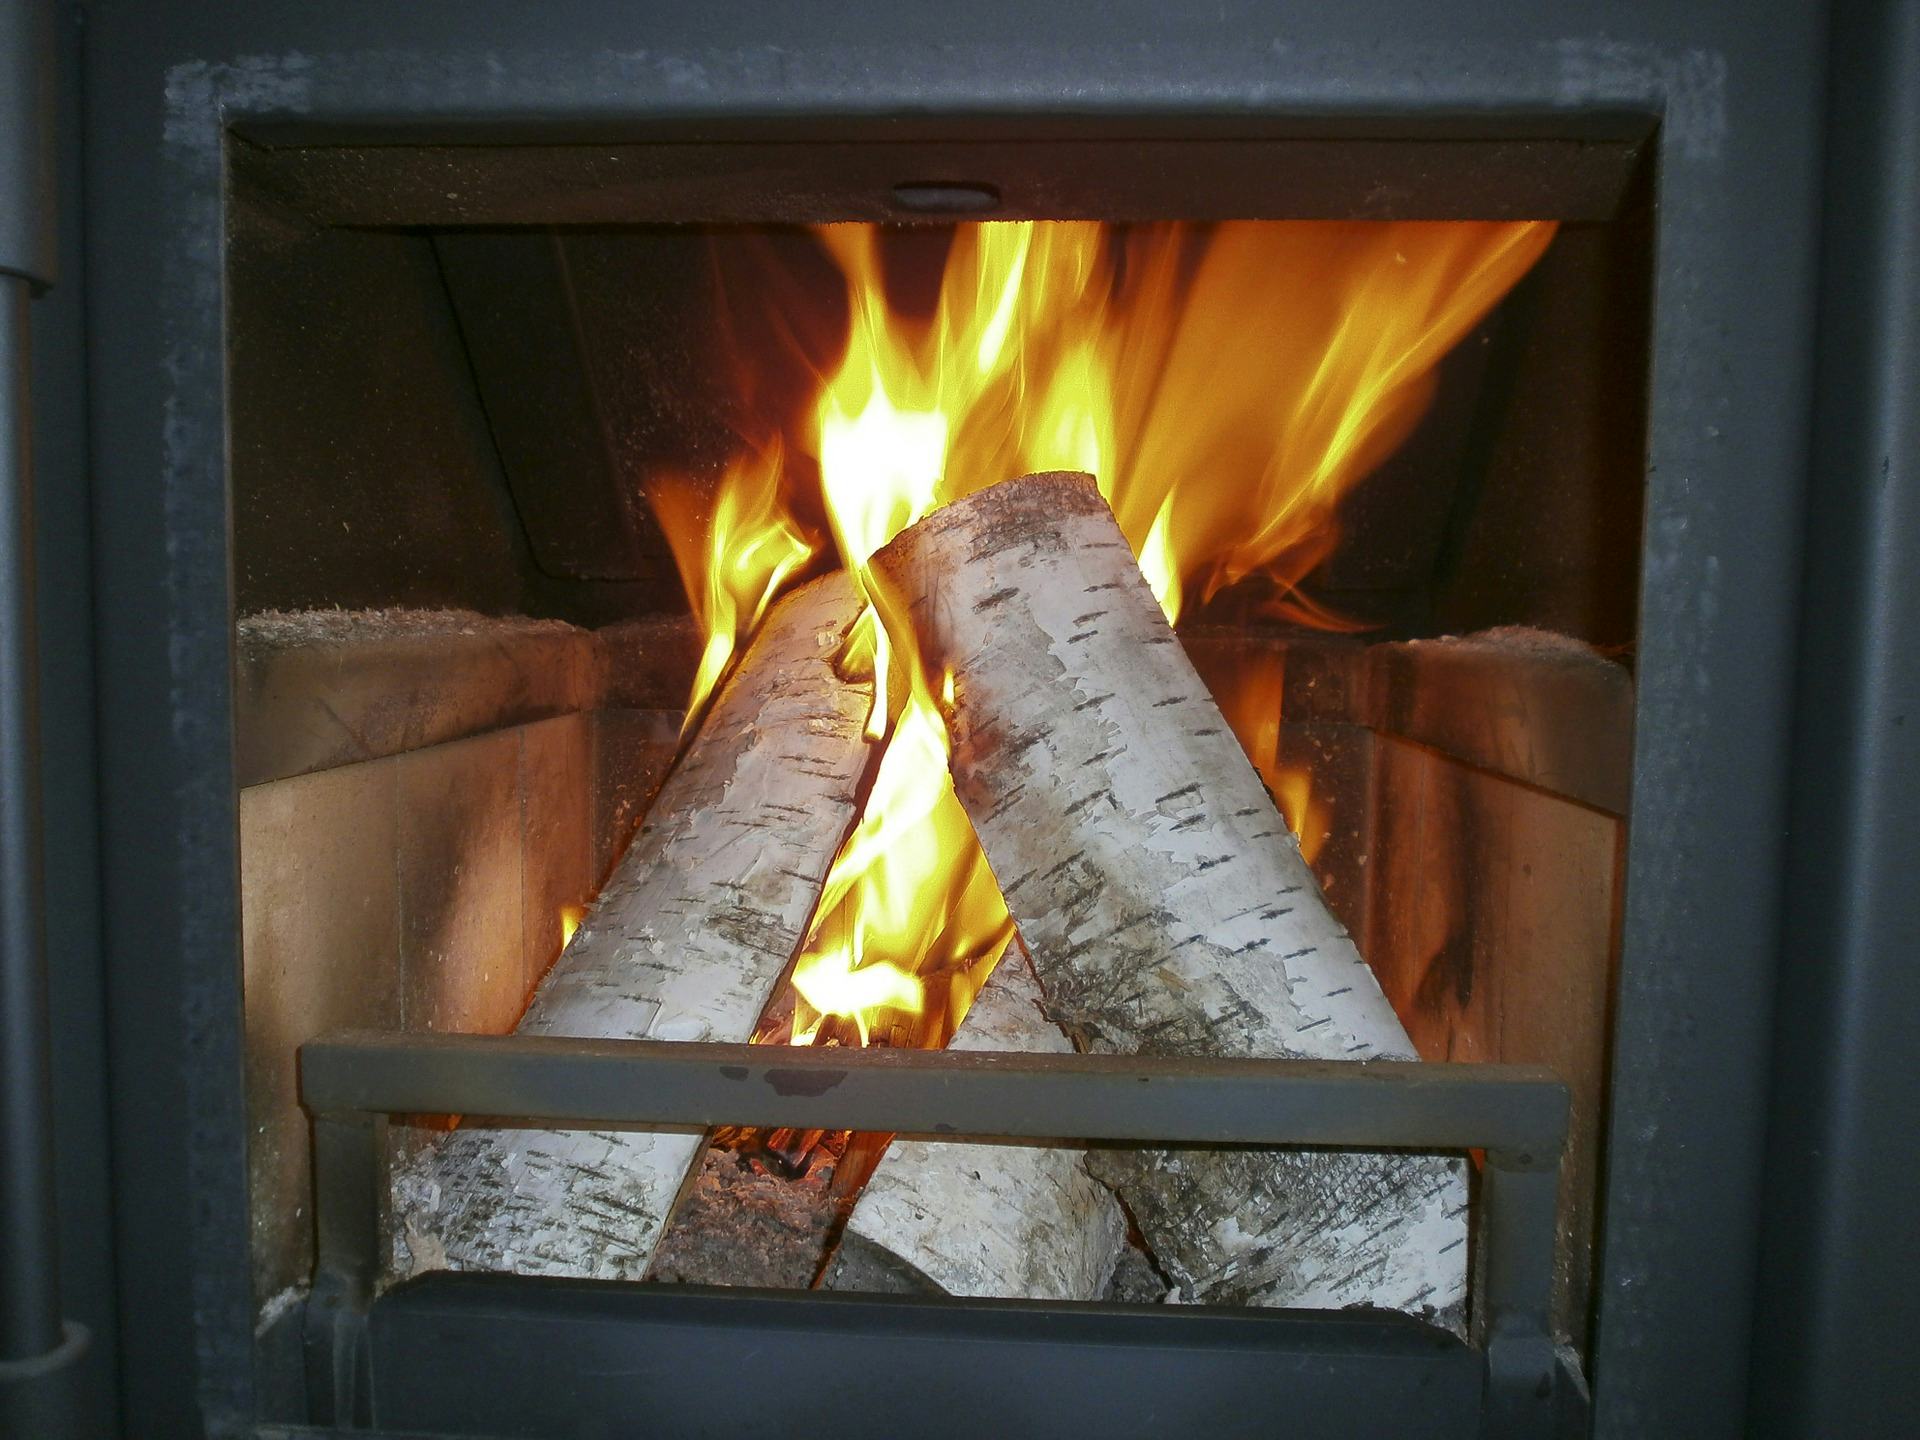 Univé: 'Onervaren houtstoker vaak onbewust van brandrisico's'